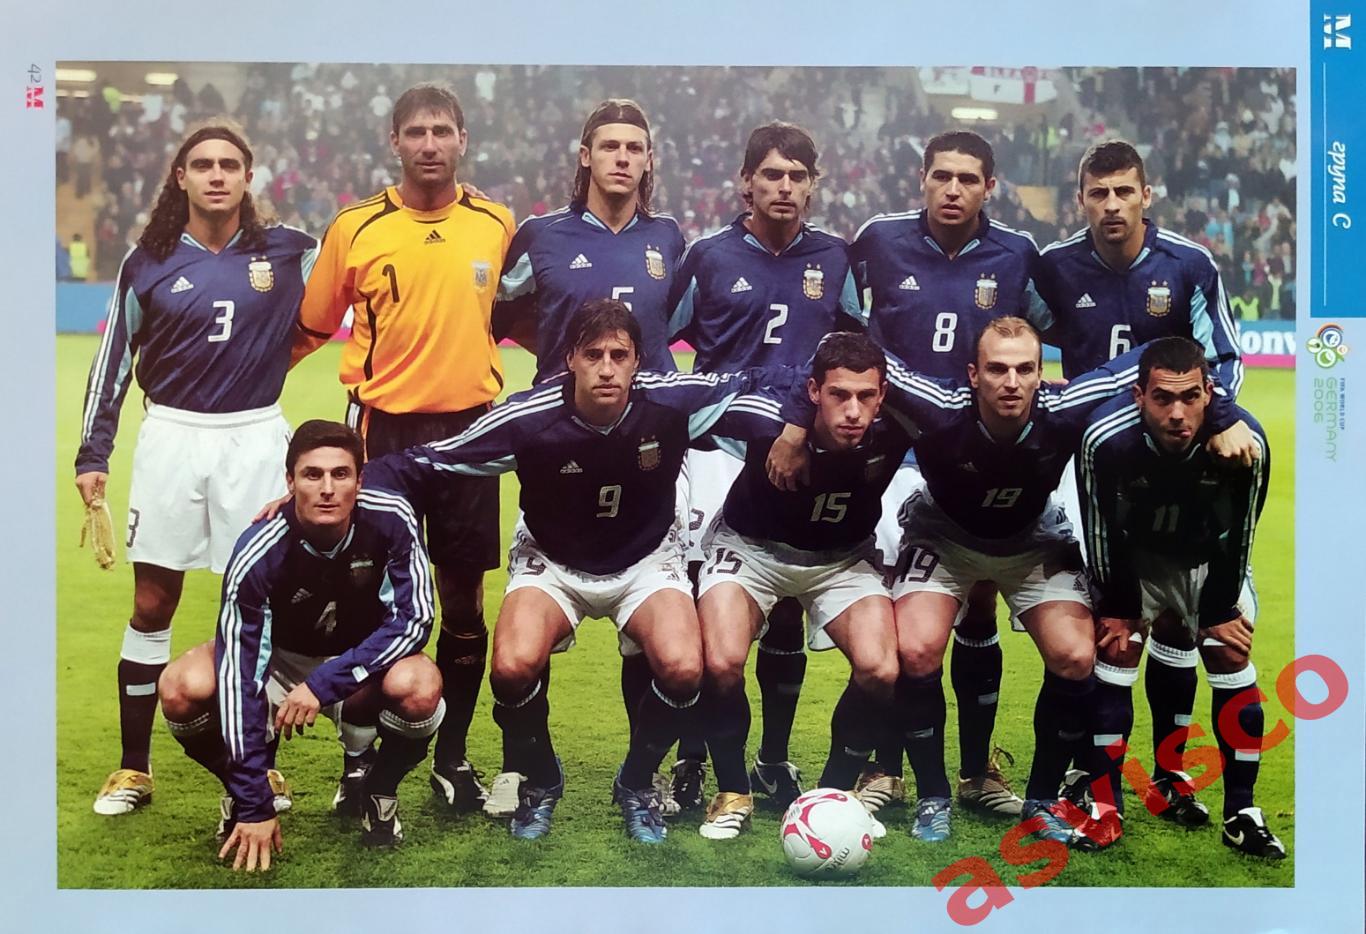 Чемпионат Мира по футболу в Германии 2006 года. Группа С. Представление команд. 2